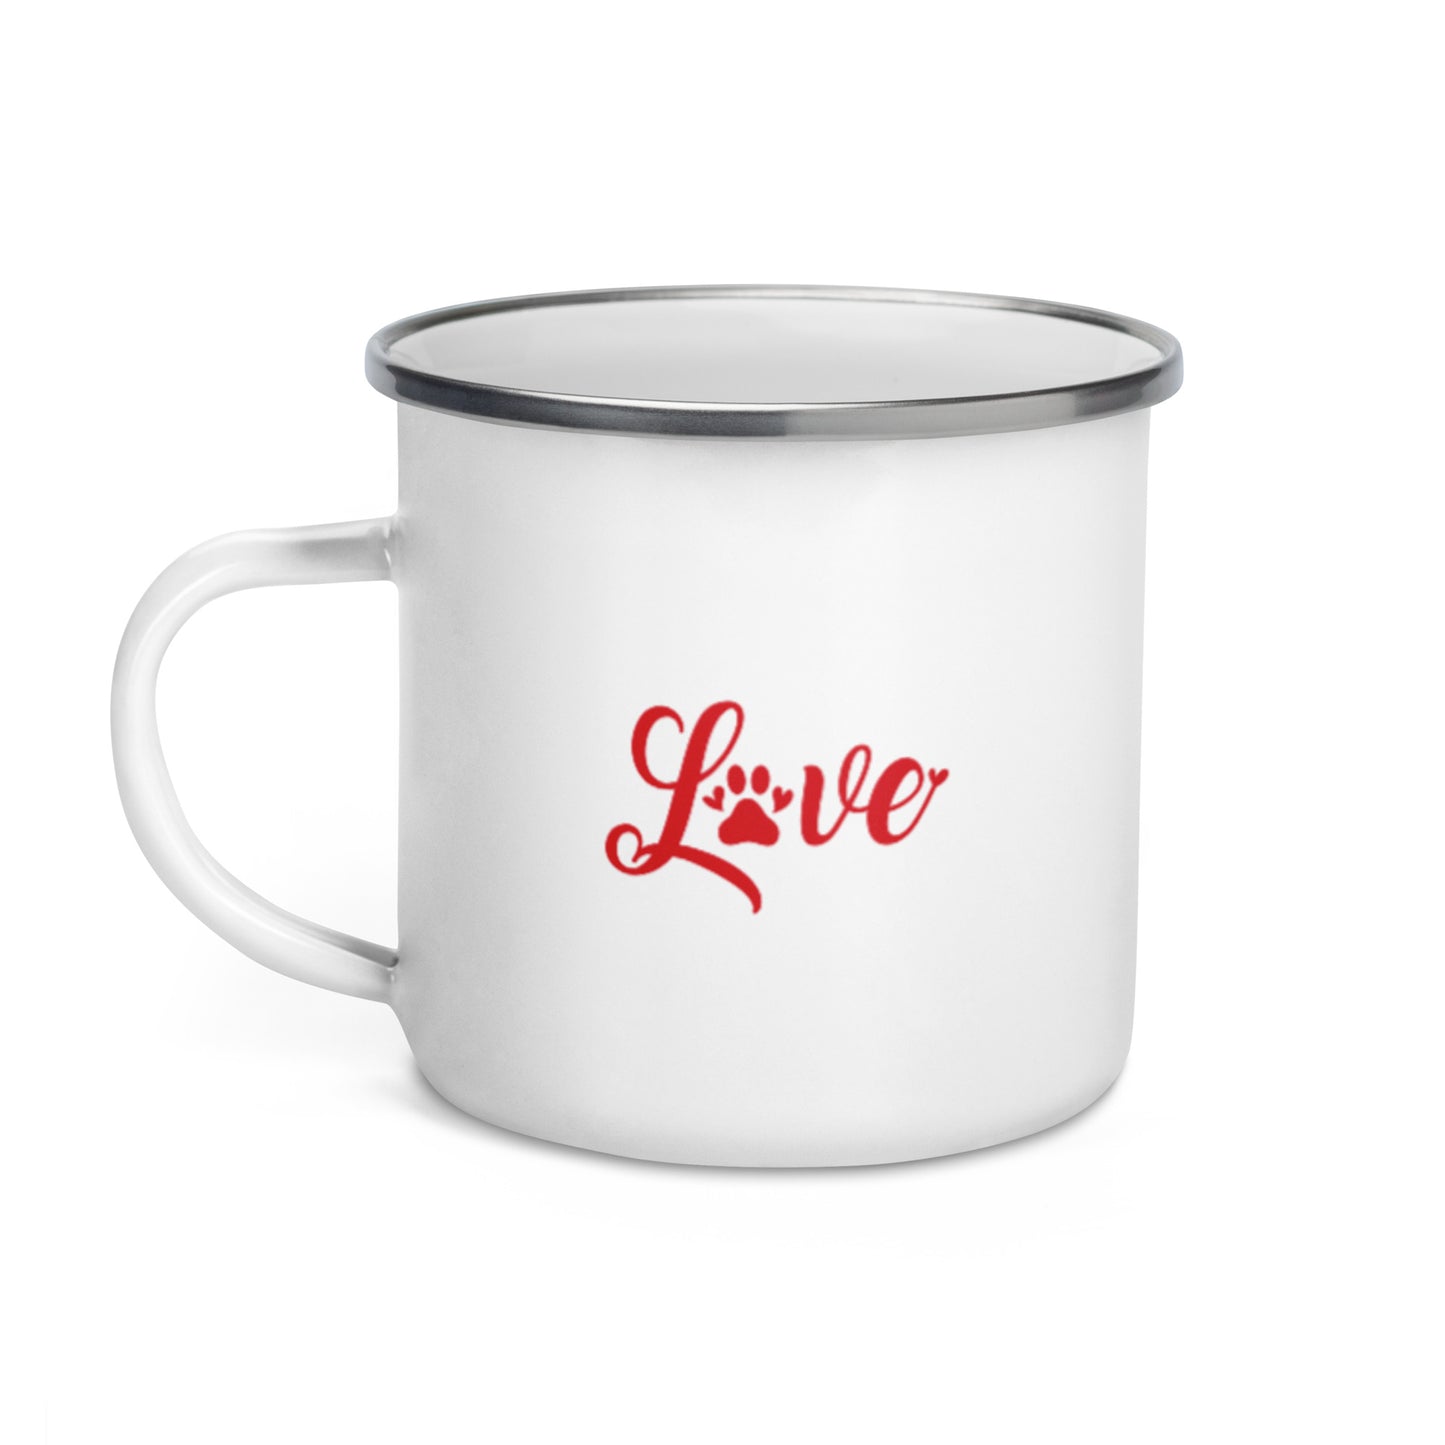 Love Enamel Mug